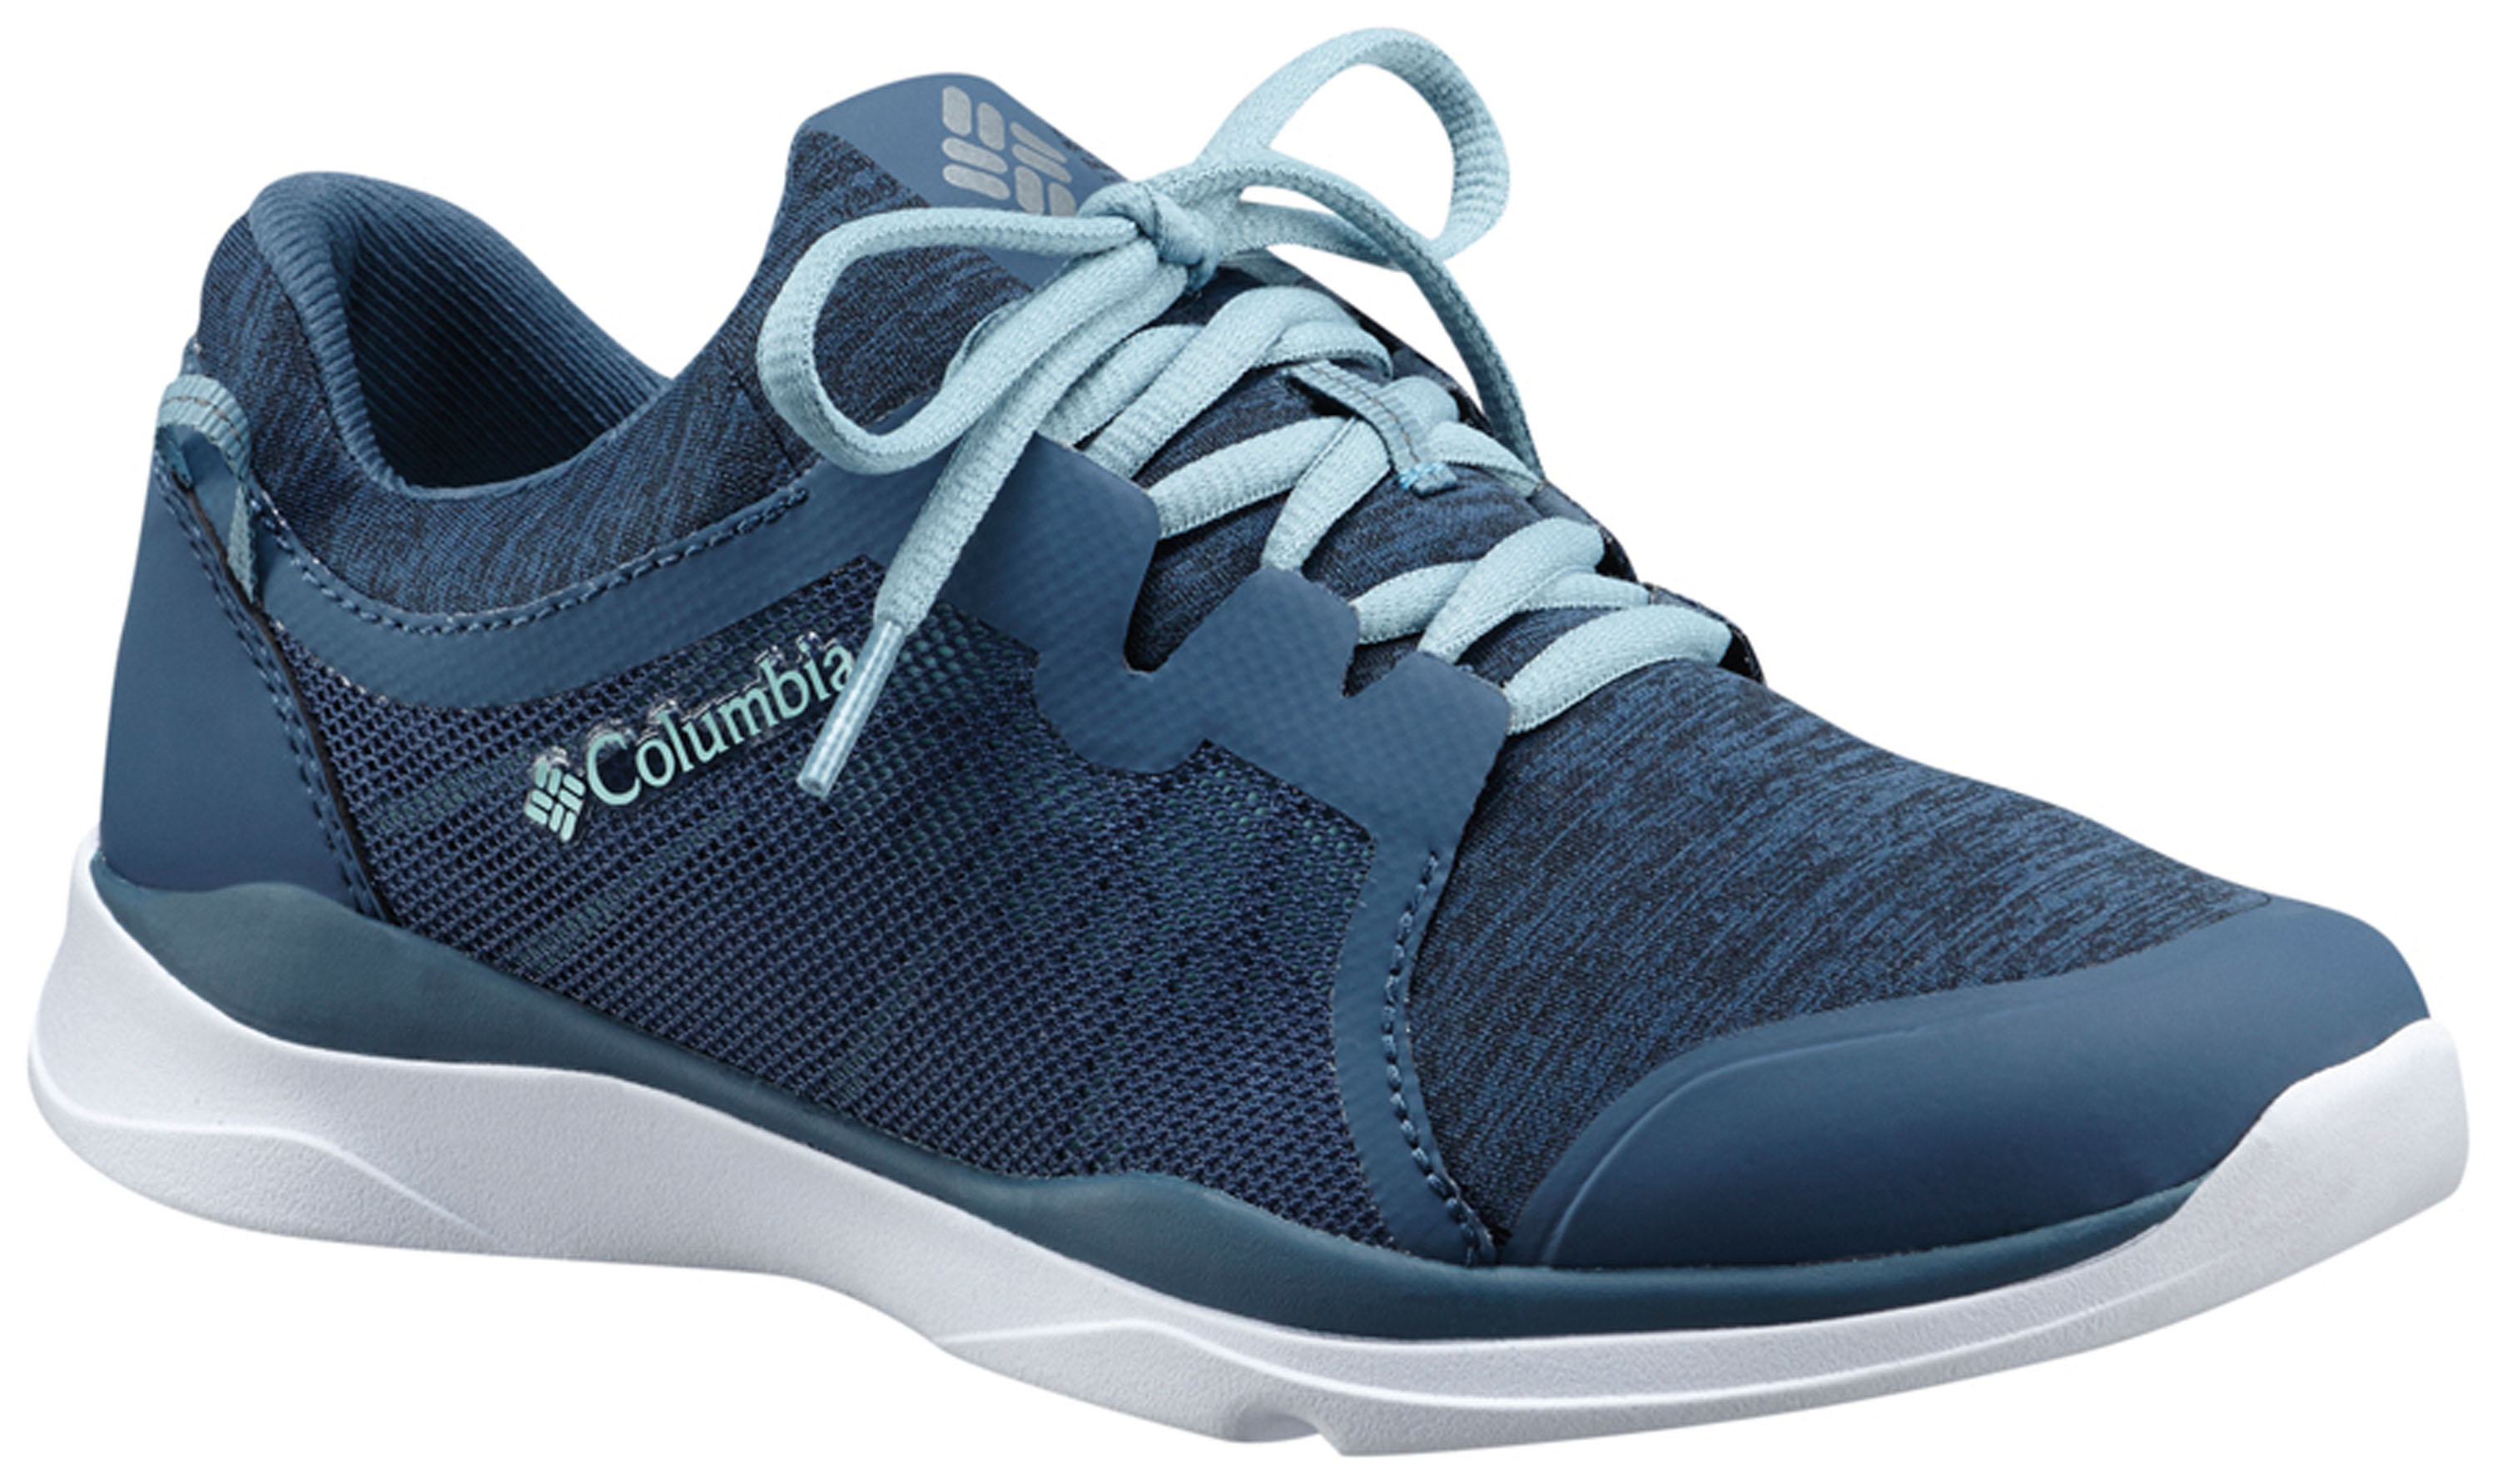 Columbia ATS Trail Reiseschlappen! Die Optik täuscht. Der ATS Trail ist ein recht stabiler Schuh, mit dem man ausdauernd laufen kann und trotzdem die Optik eines leichten Sneakers hat. 89,95 Euro